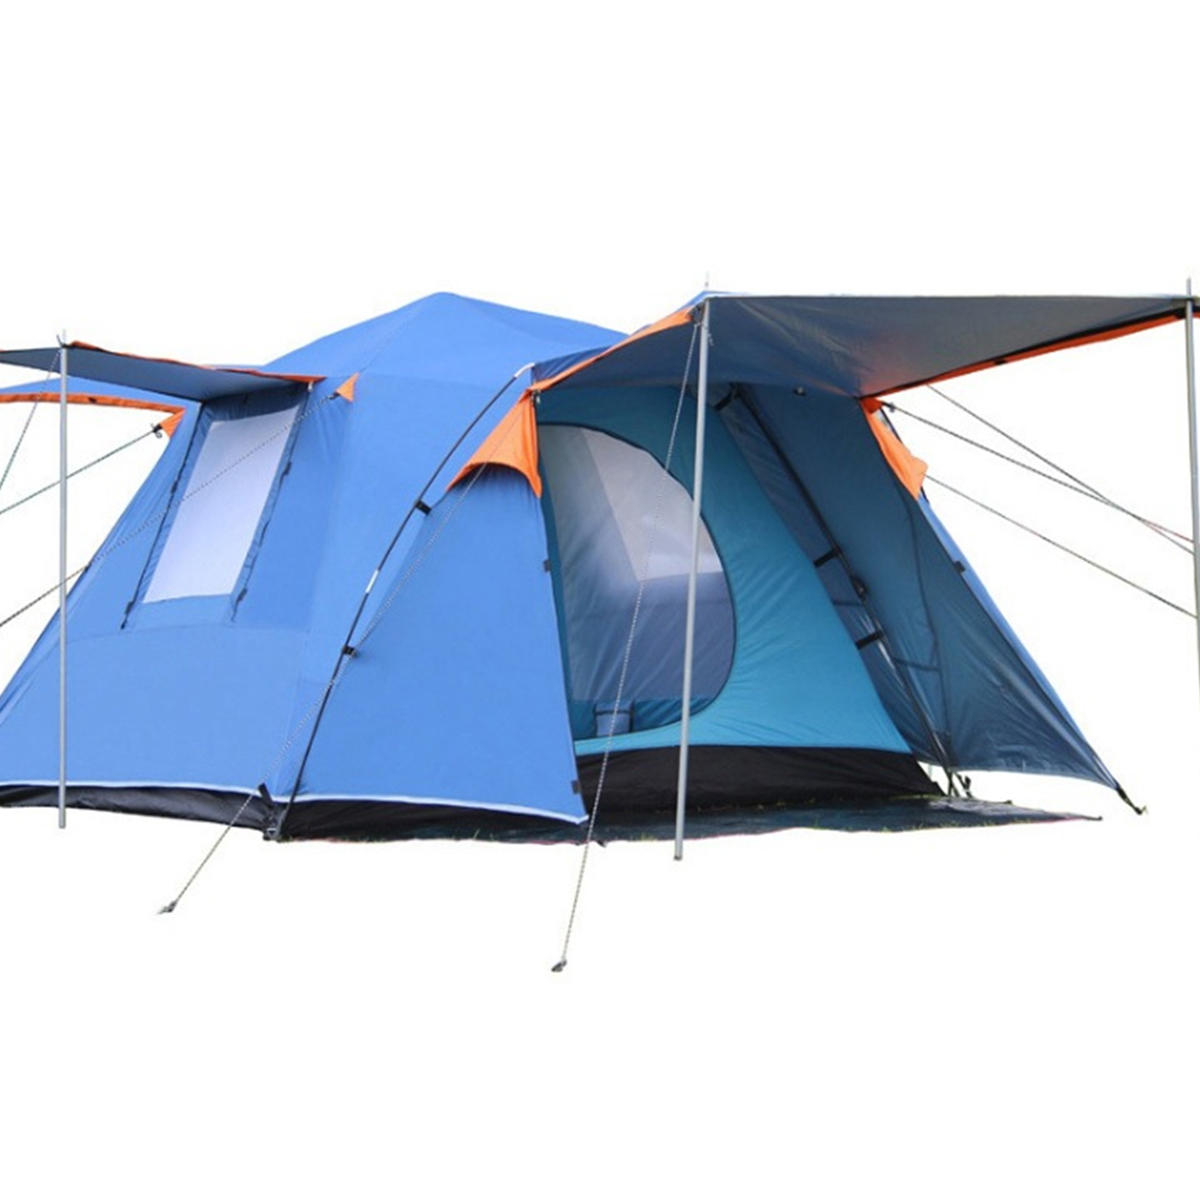 خيمة أوتوماتيكية لـ 3-4 أشخاص في الهواء الطلق ، مقاومة للماء وذات طبقتين مع غطاء للشمس.